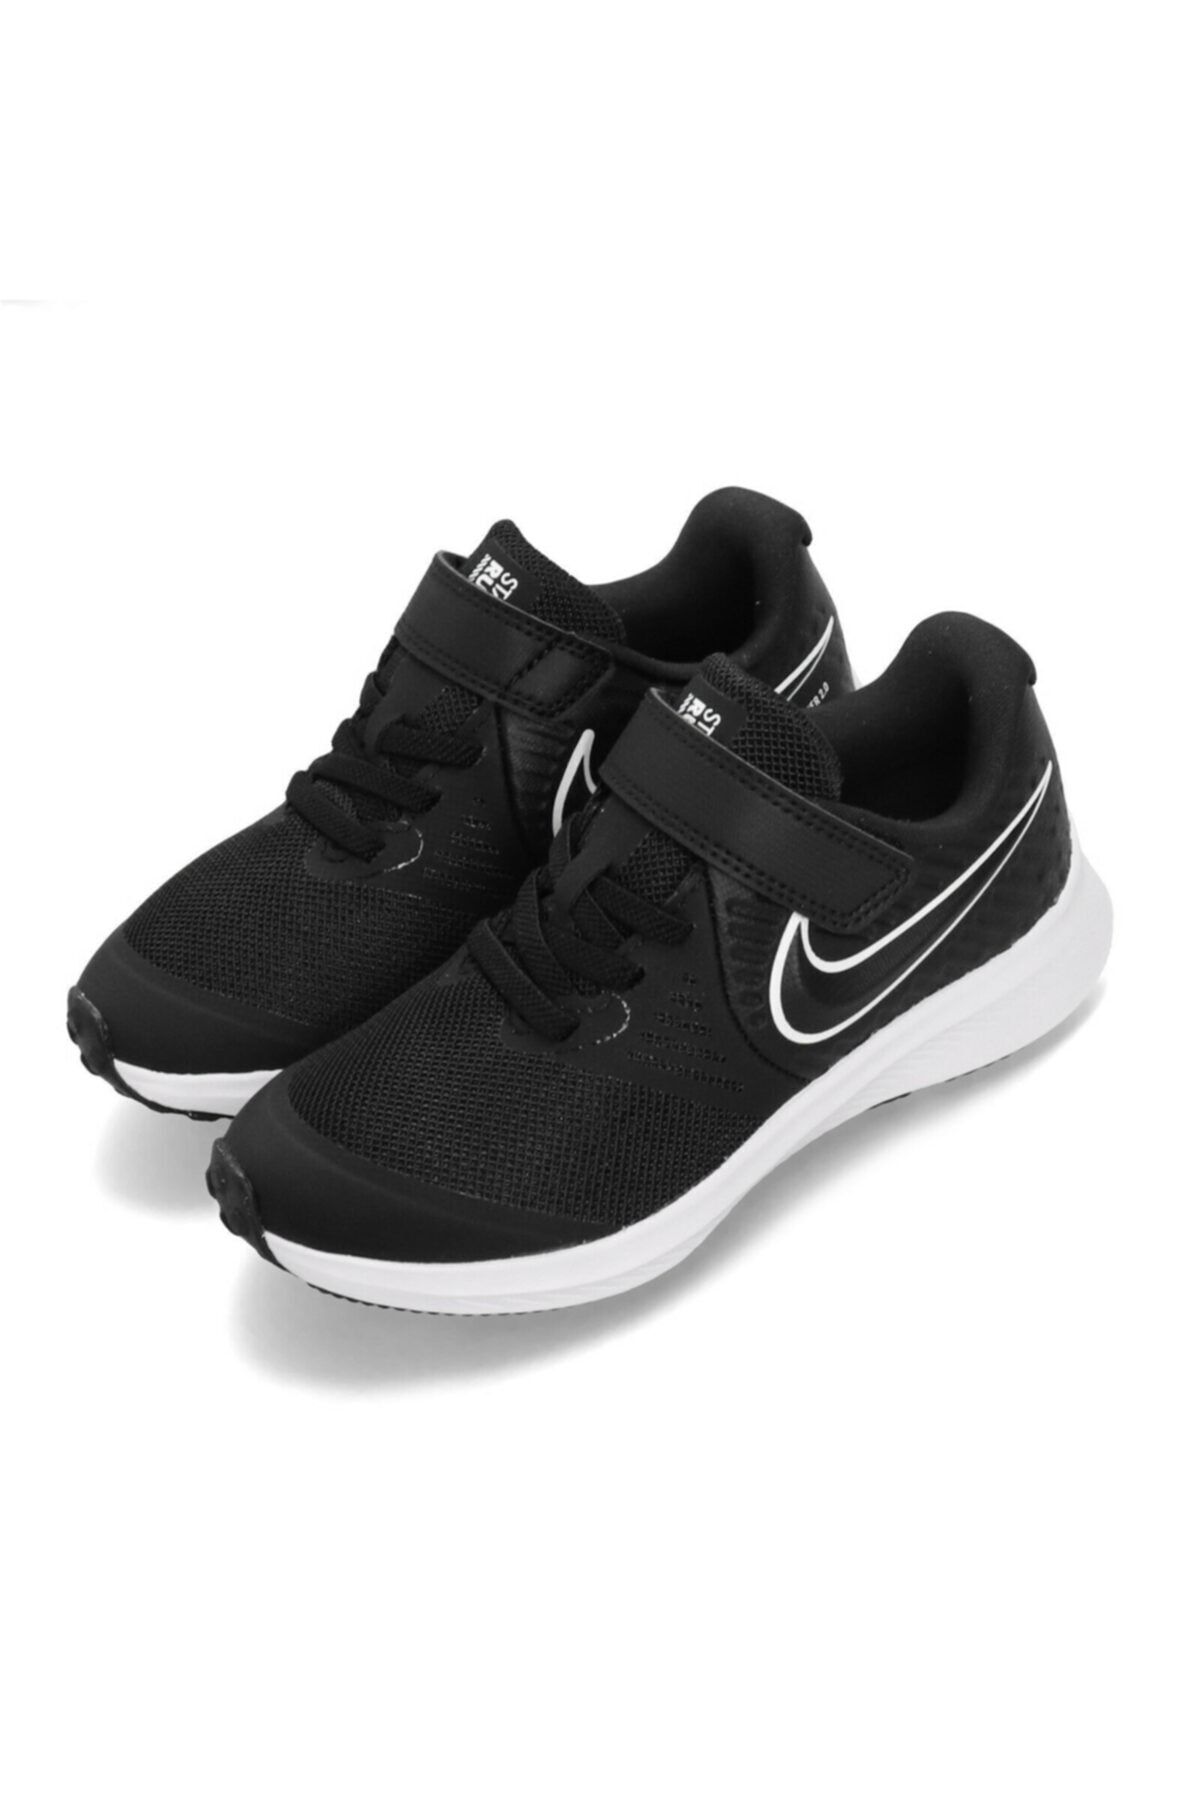 Nike At1801-001 Star Runner 2 Çocuk Koşu Ayakkabı